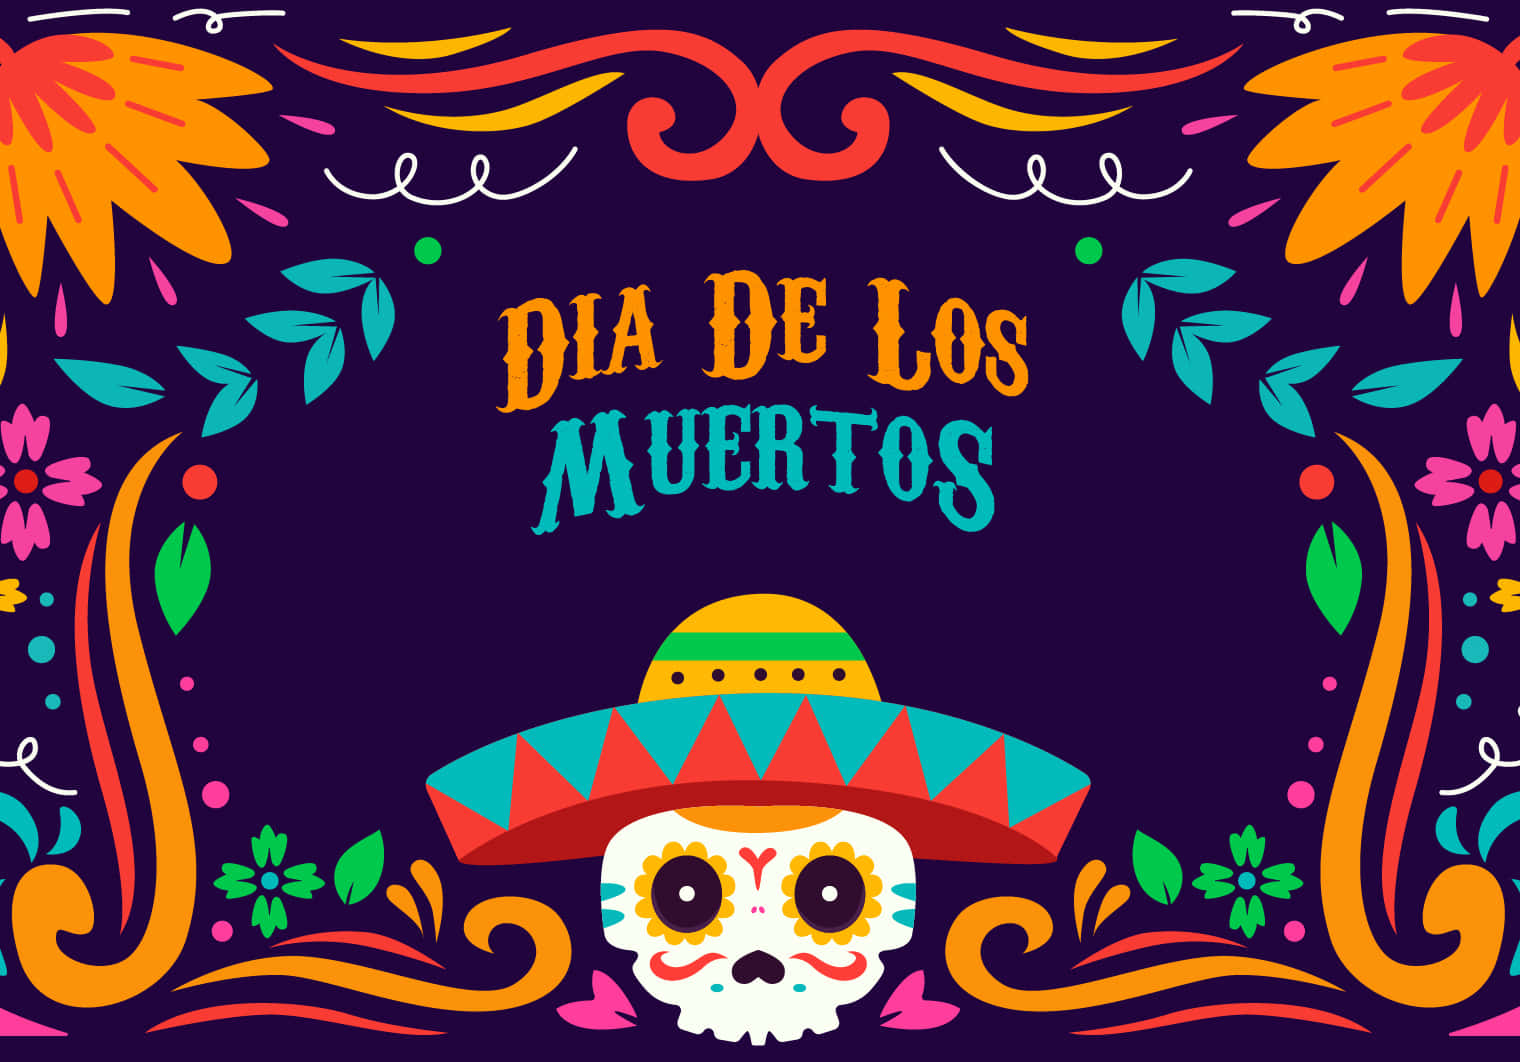 Feiernsie Den Dia De Los Muertos Mit Lebendigen Und Bunten Festlichkeiten